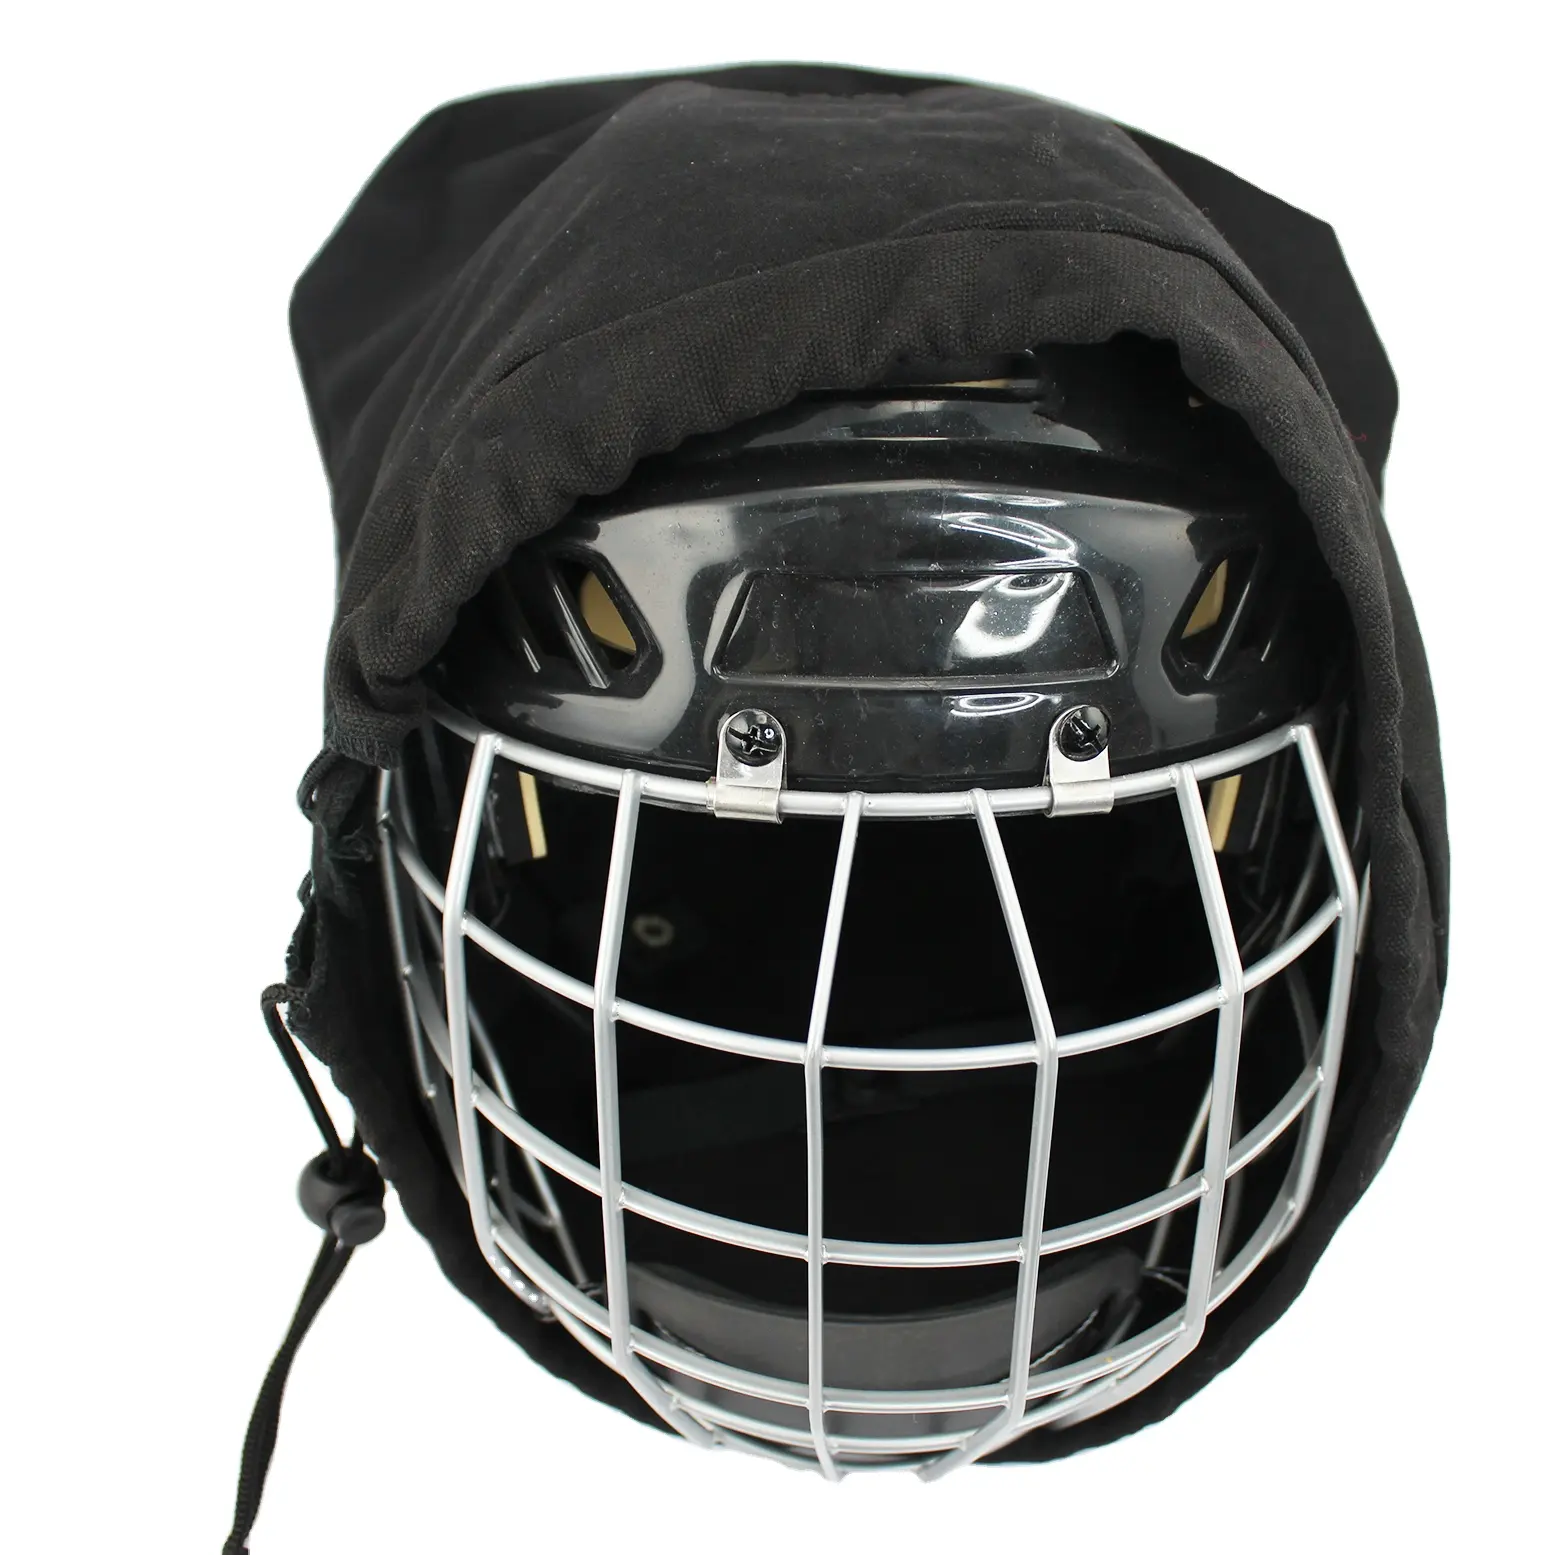 Kit de acessórios para capacetes esportivos de hóquei de alta qualidade